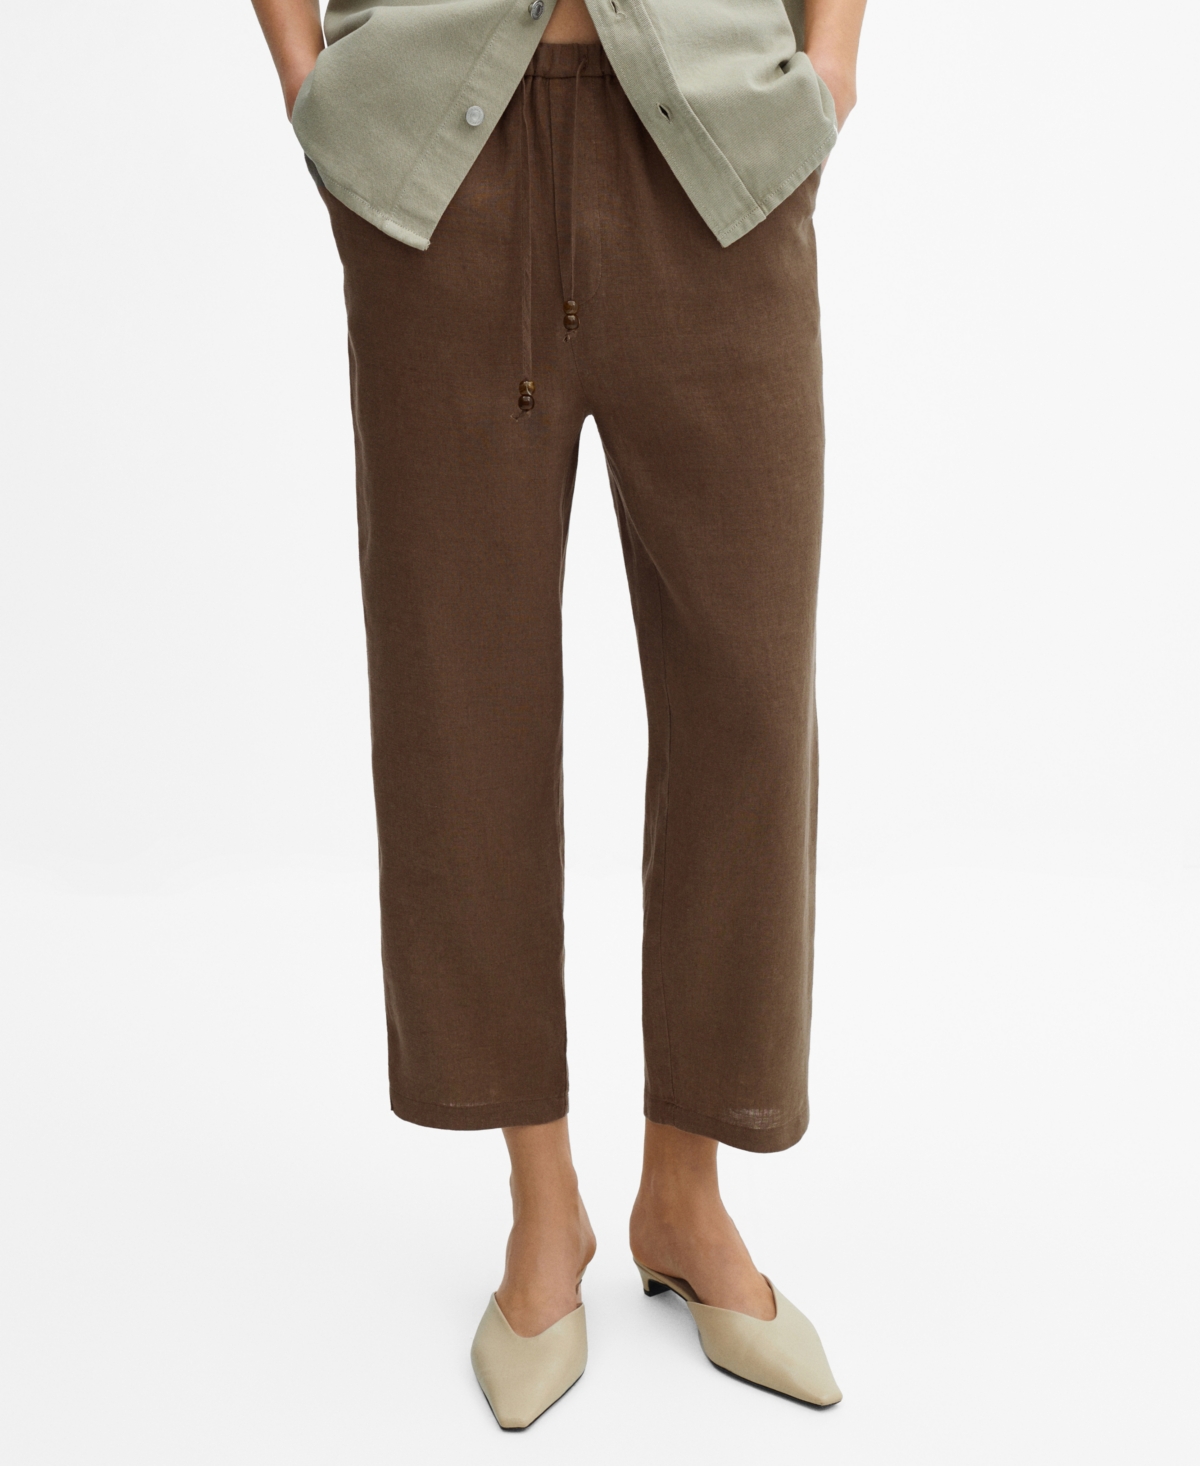 Women's 100% Linen Pants - Medium Bro